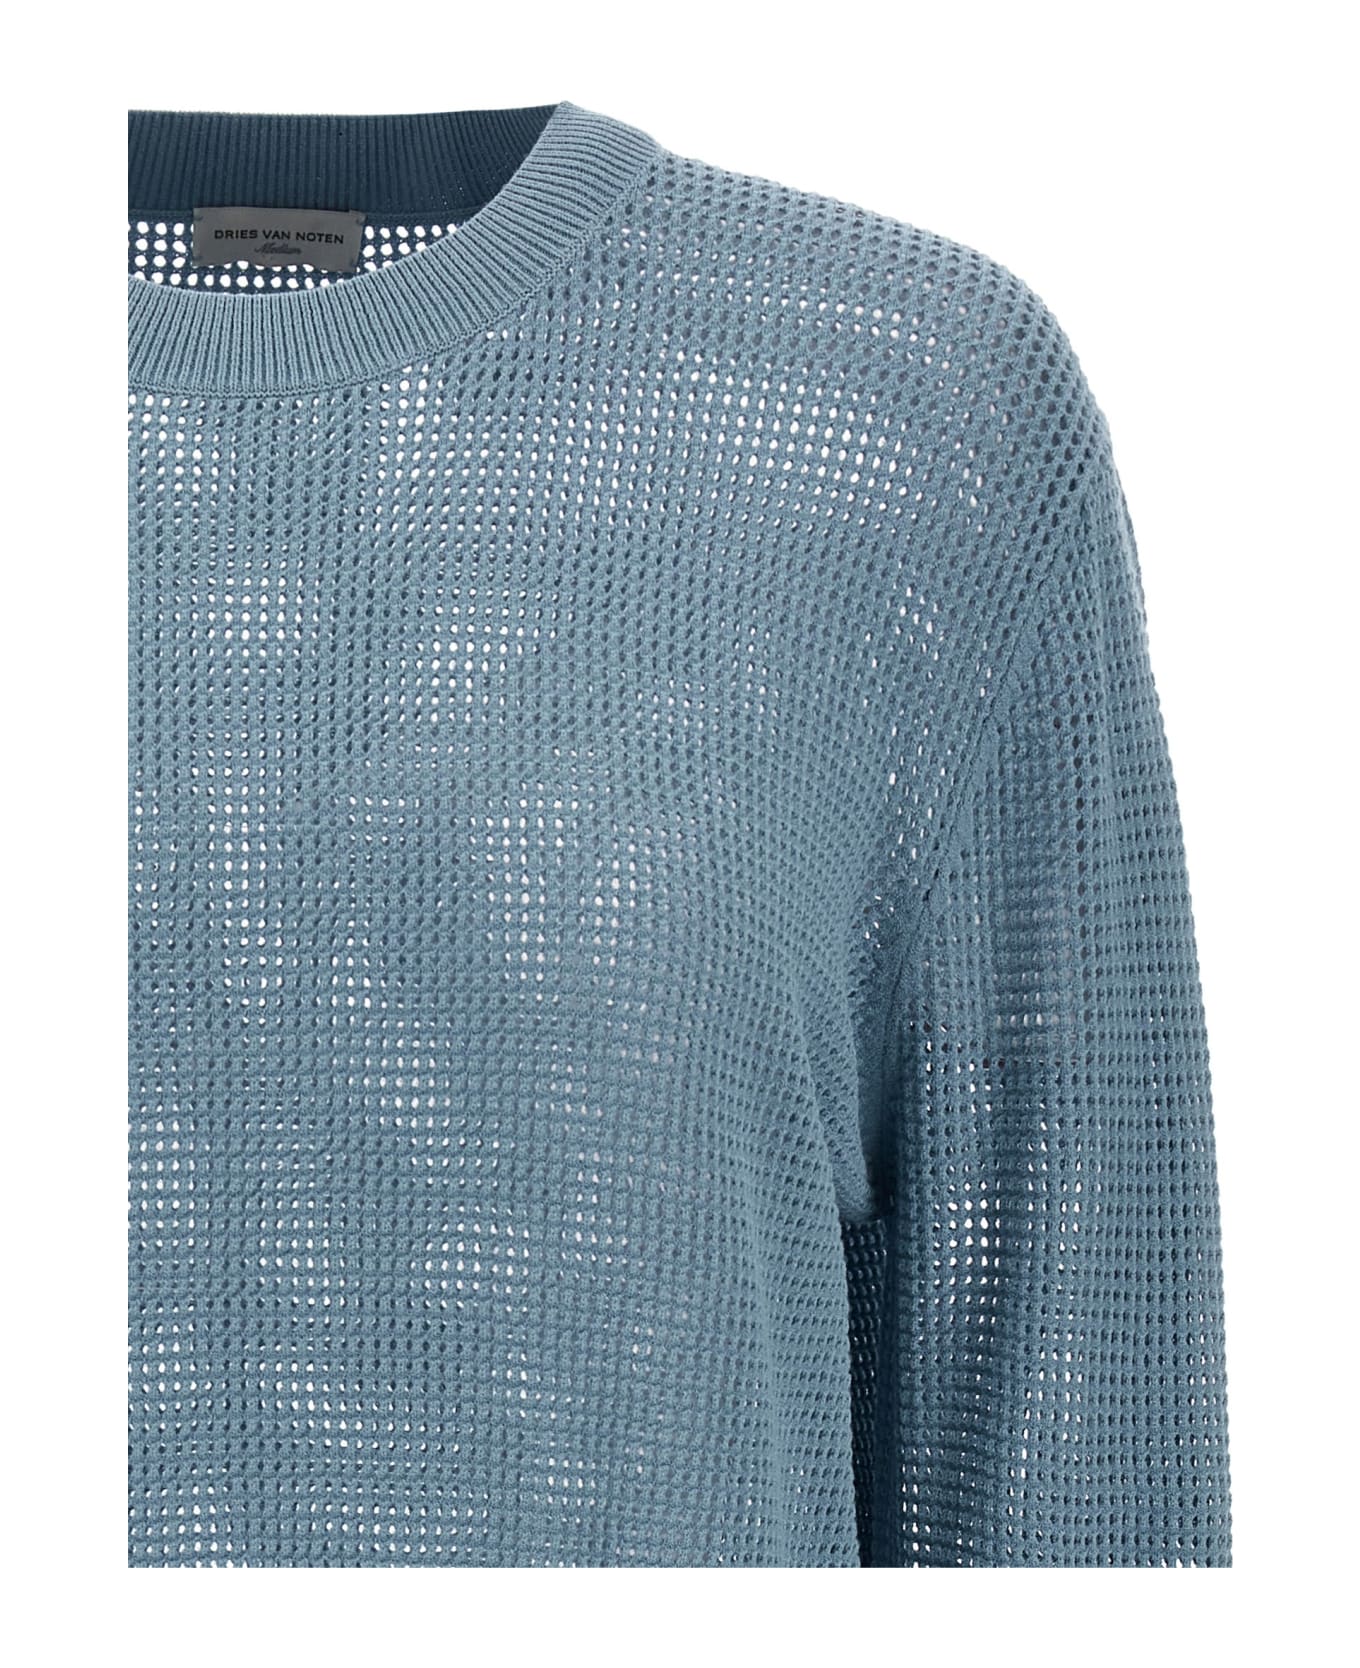 Dries Van Noten 'mixed' Sweater - Light Blue